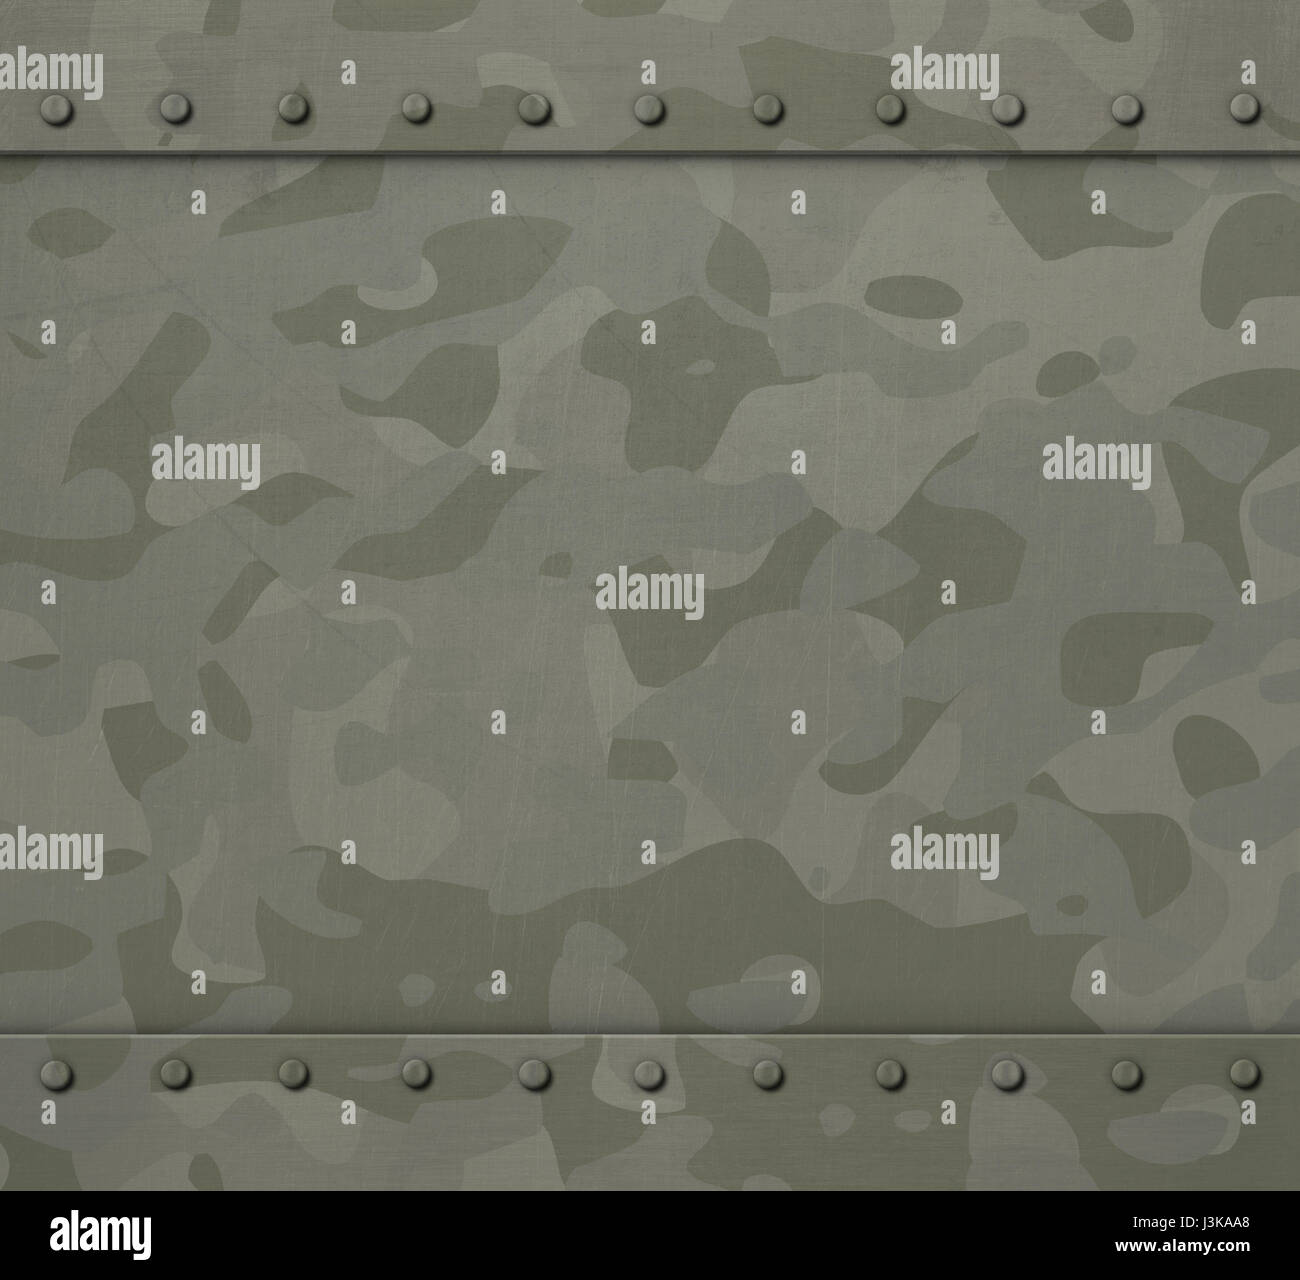 Armure de camouflage militaire 3d illustration background Banque D'Images